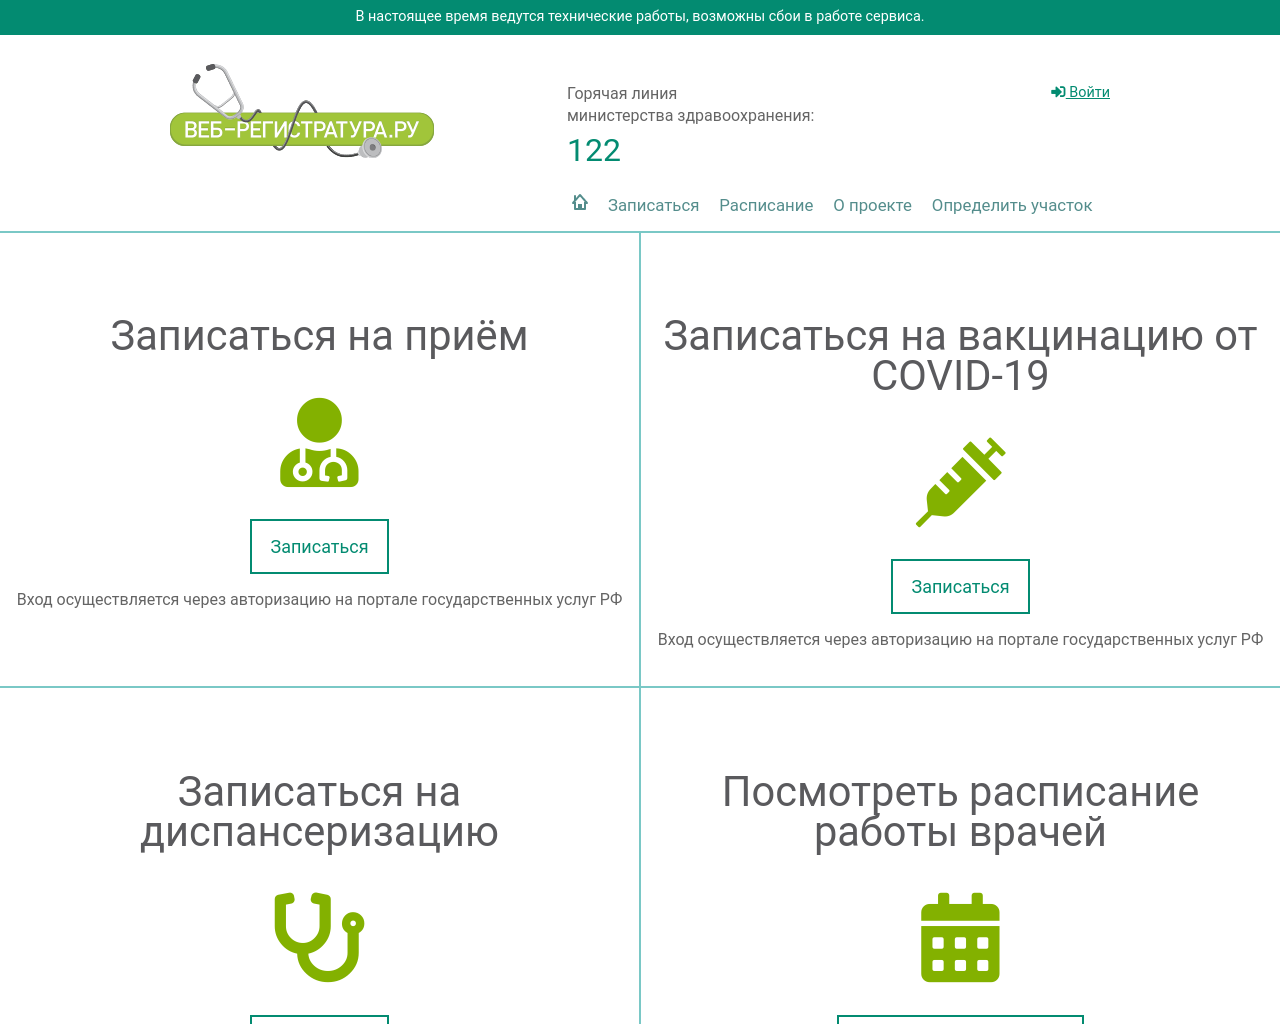 web-registratura.ru